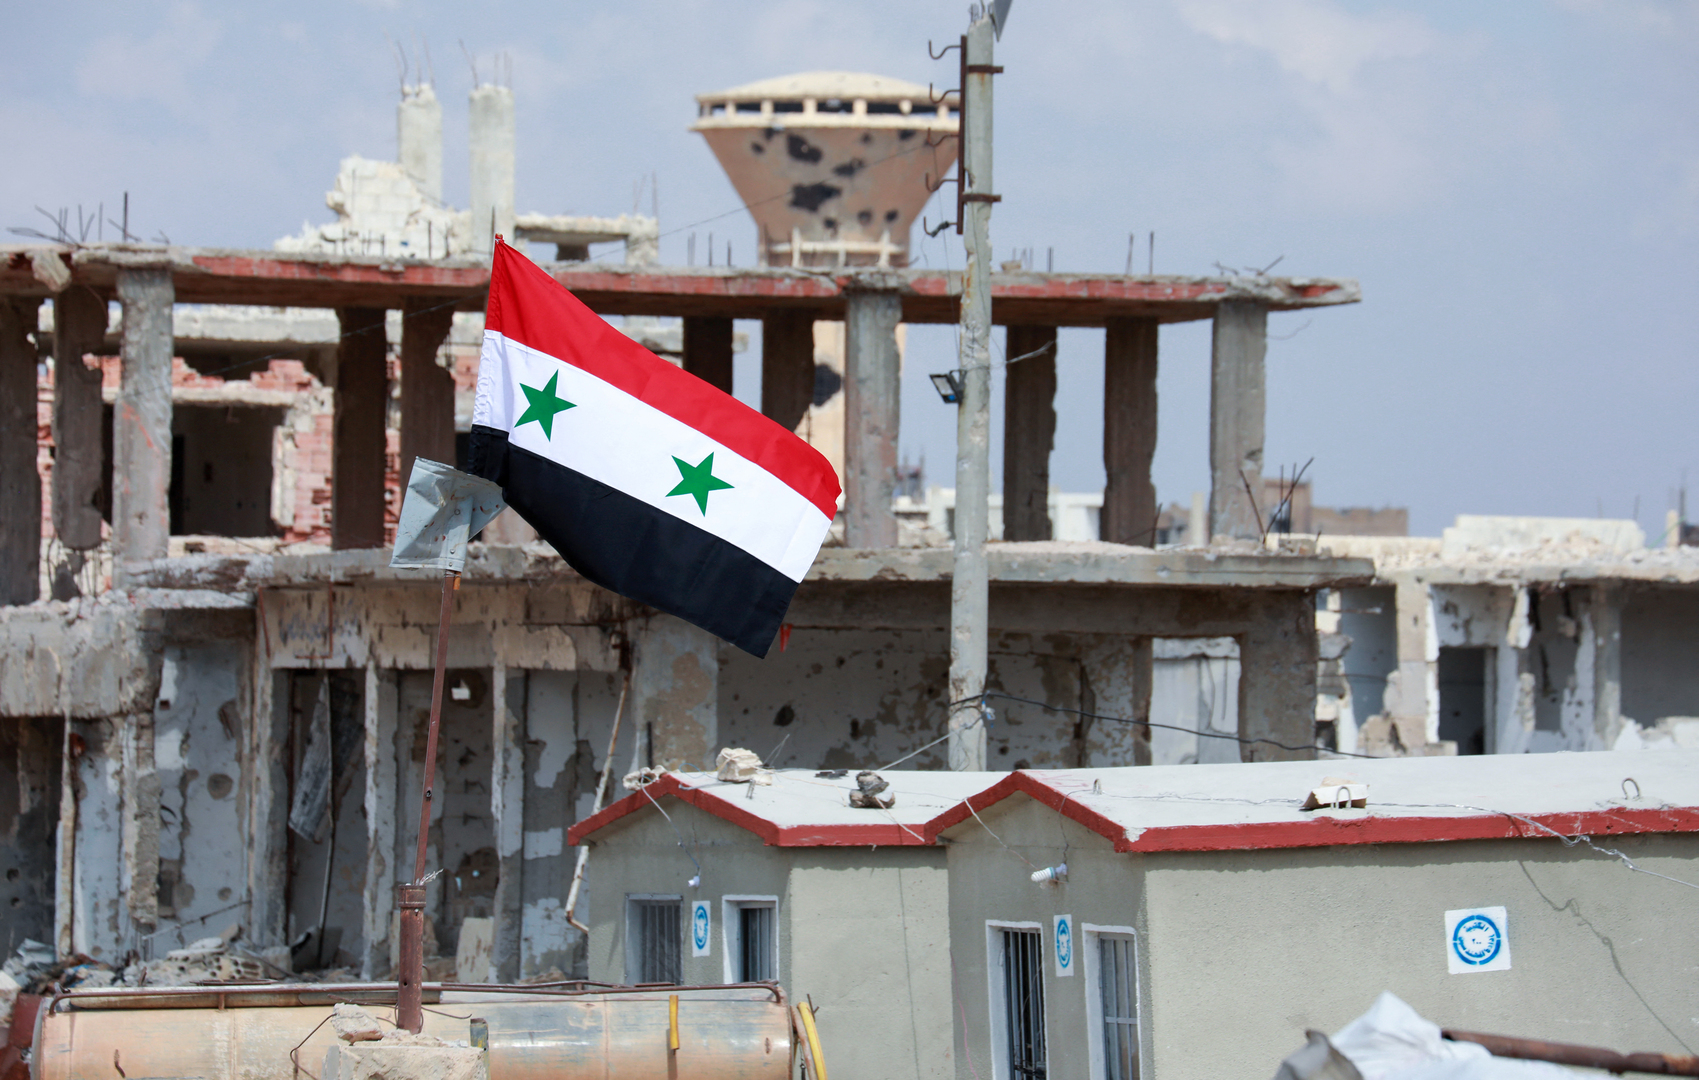 دمشق: تقديم مساعدات للتنظيمات الإرهابية من قبل واشنطن دمر اقتصادنا